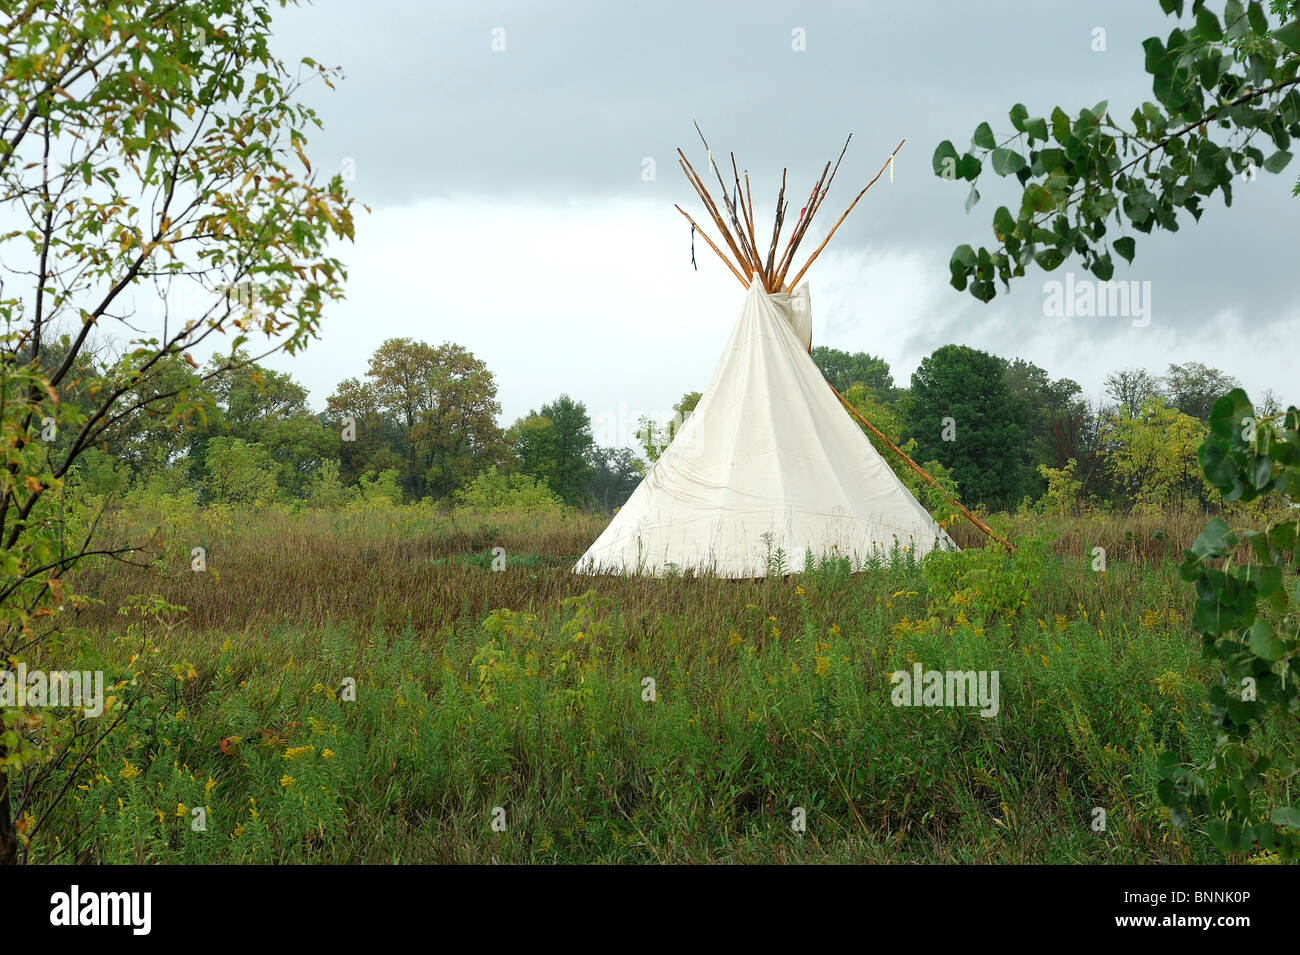 Tipi Indianer Zelt Campingplatz obere Sioux Agentur State Park Granit fällt Minnesota USA Amerika Vereinigte Staaten von Amerika Stockfoto